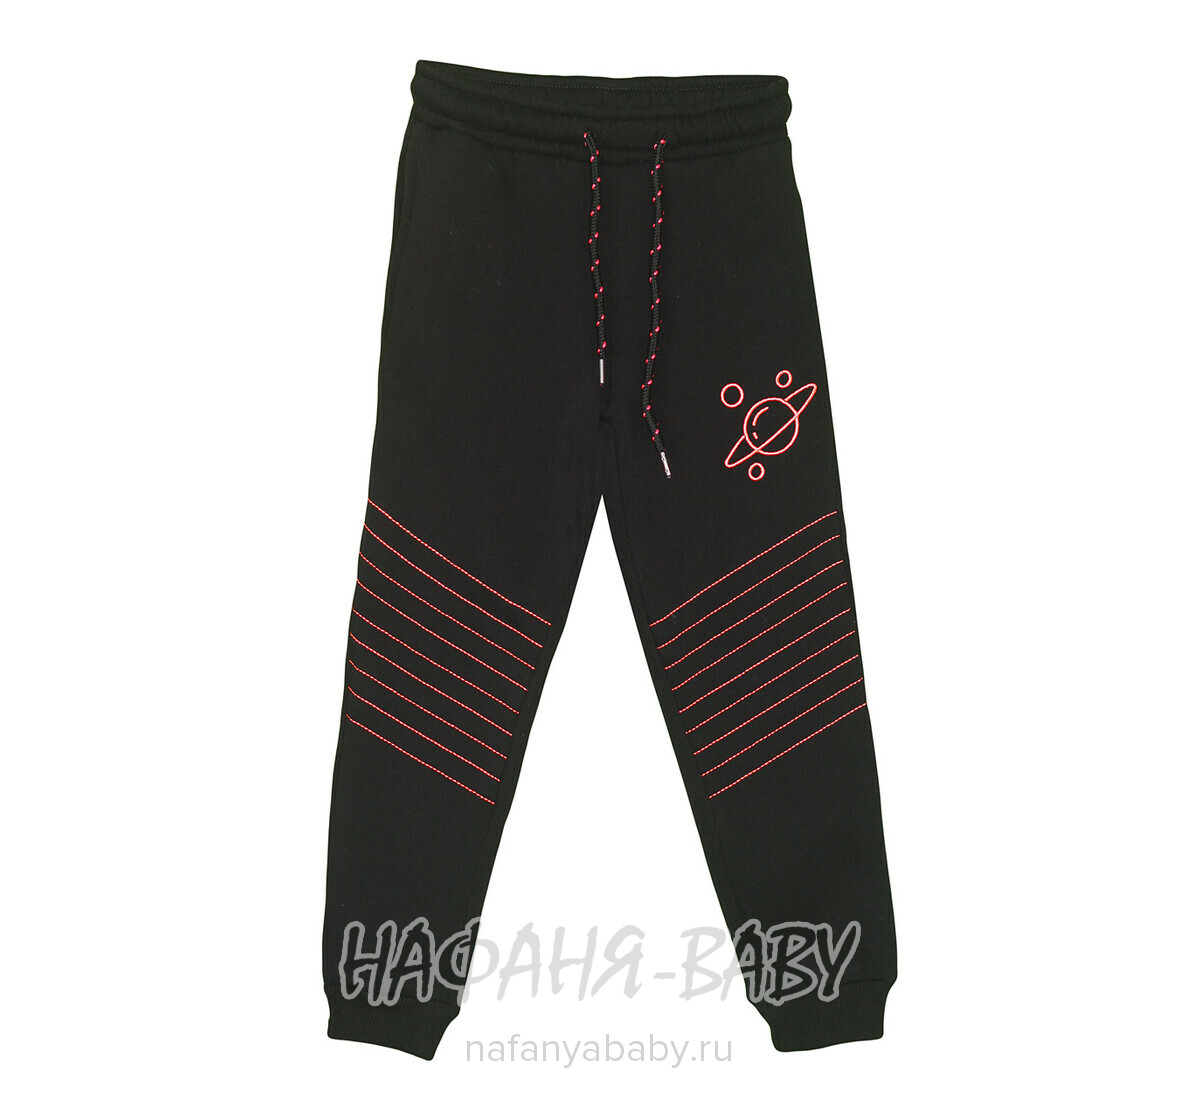 Теплые брюки с начесом MISIL, купить в интернет магазине Нафаня. арт: 3636 13-16.